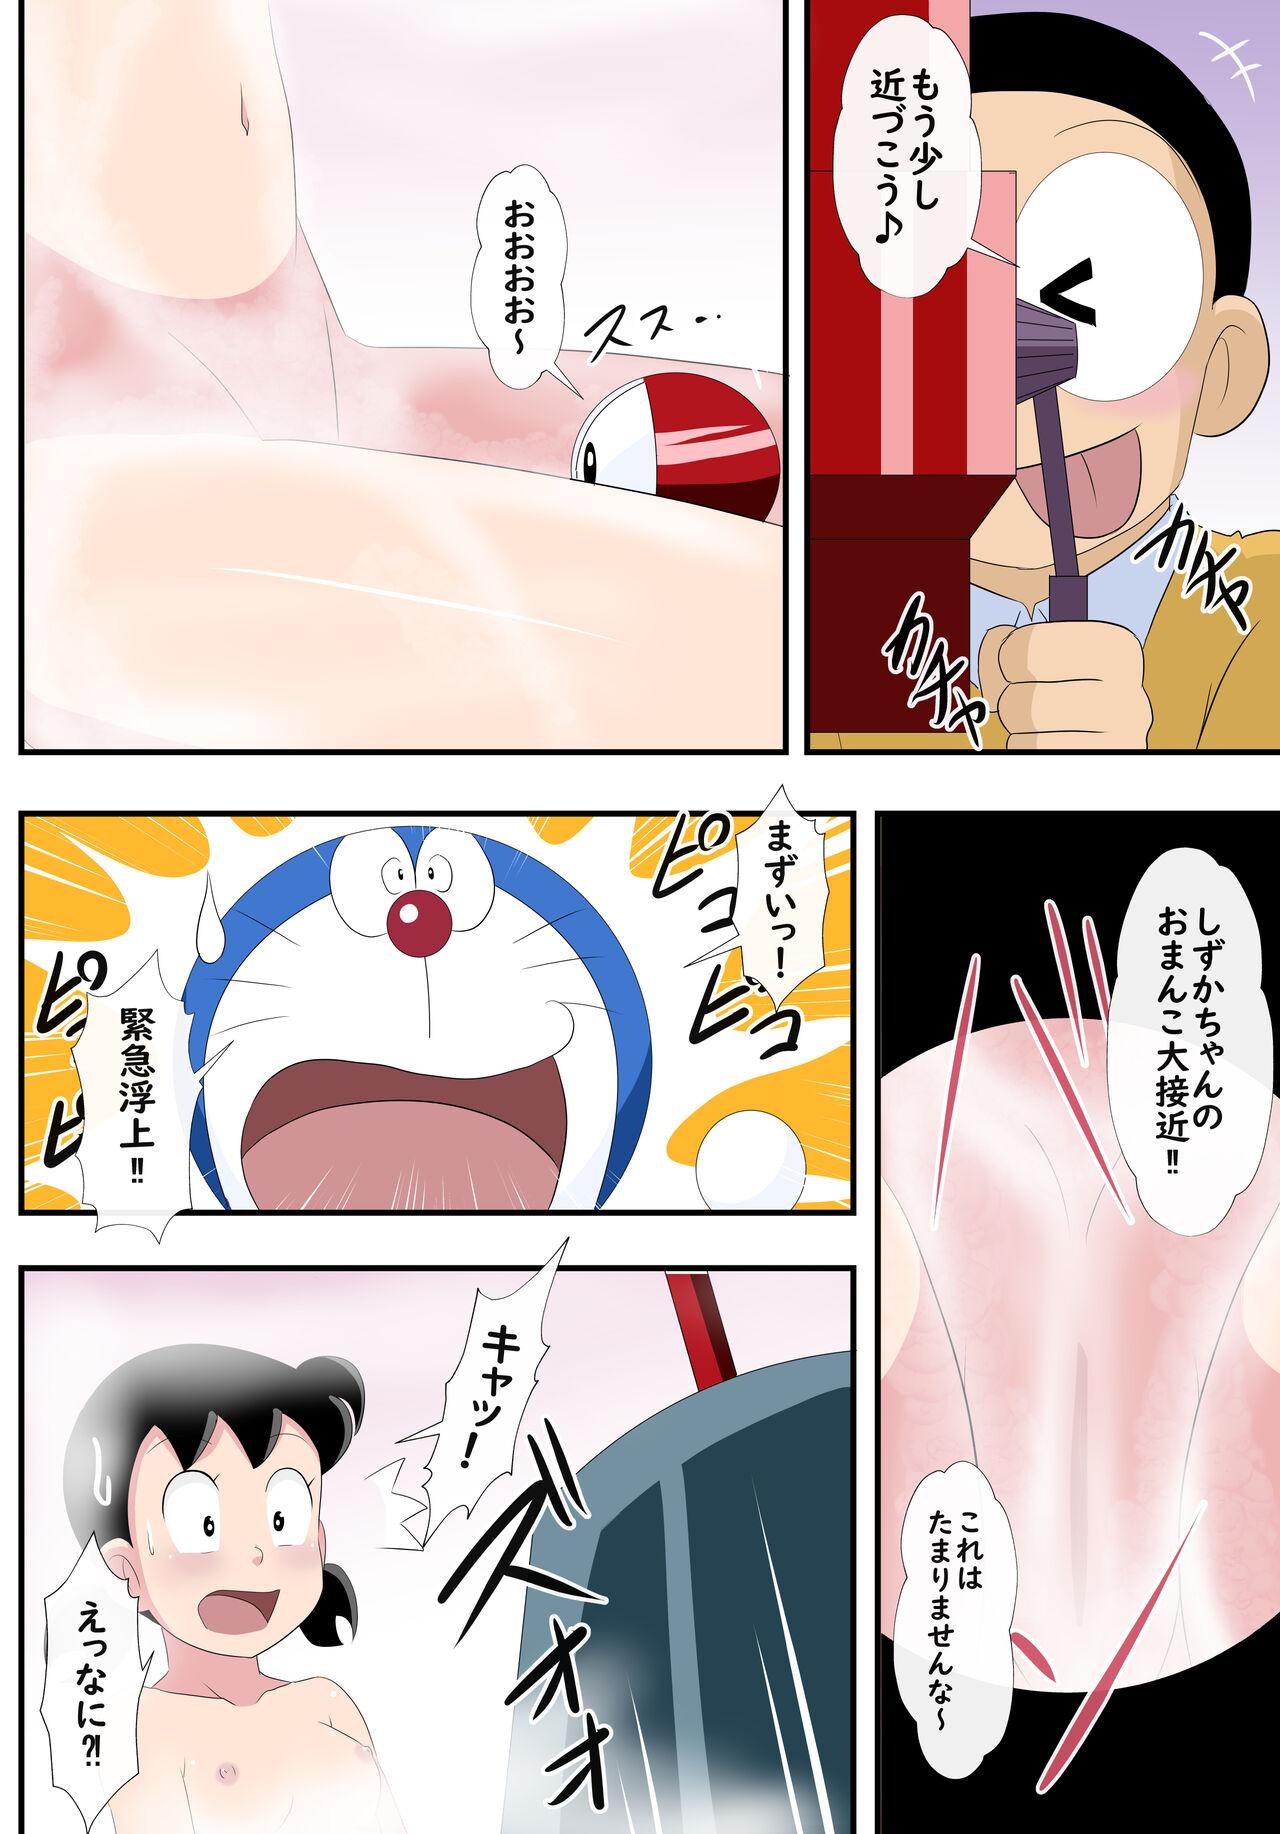 [Cicle Takaya] Zenmai-shiki sen haji-kan - if - (Doraemon, Perman) 61